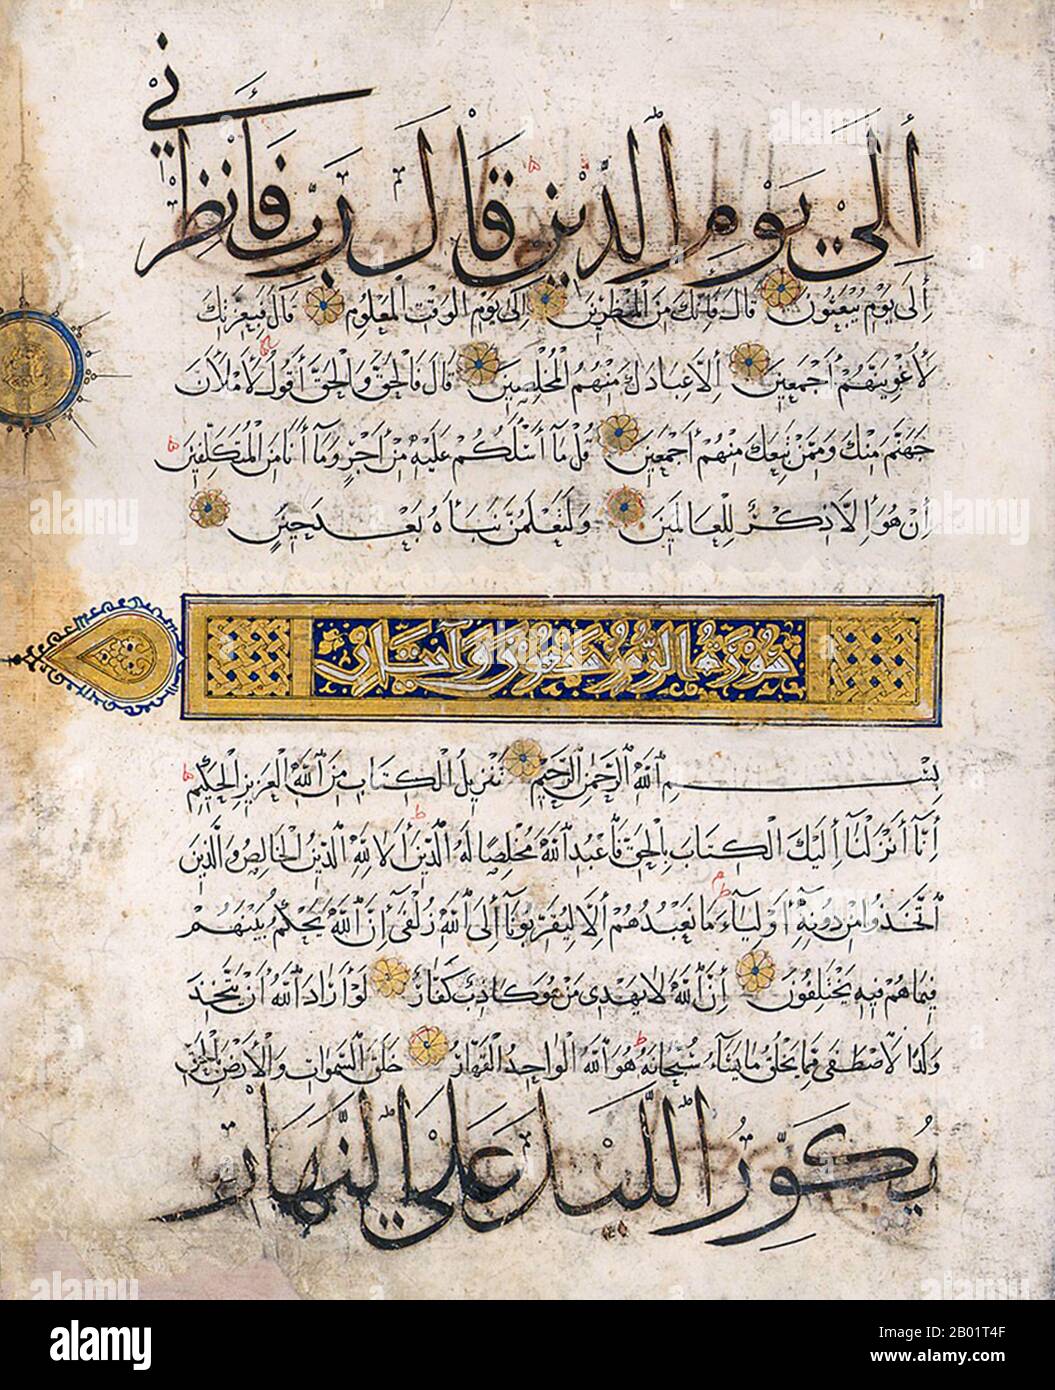 Yemen: Folio da un Corano scritto in quattro diversi stili di scrittura - Naskhi, Muhaqqaq, Kufic e Thuluth, c. 1300-1350. Insolitamente, questa foglia di un Corano mostra quattro diversi tipi di script. Il Kufi orientale è usato per il titolo del capitolo incorniciato e illuminato per la sura 20 e per i marcatori rotondi per ogni decimo versetto. Inoltre Naskh è usato per il testo principale; Muhaqqaq è usato nelle linee nere contornate con oro; e Thuluth è usato per le linee centrali dorate. Foto Stock